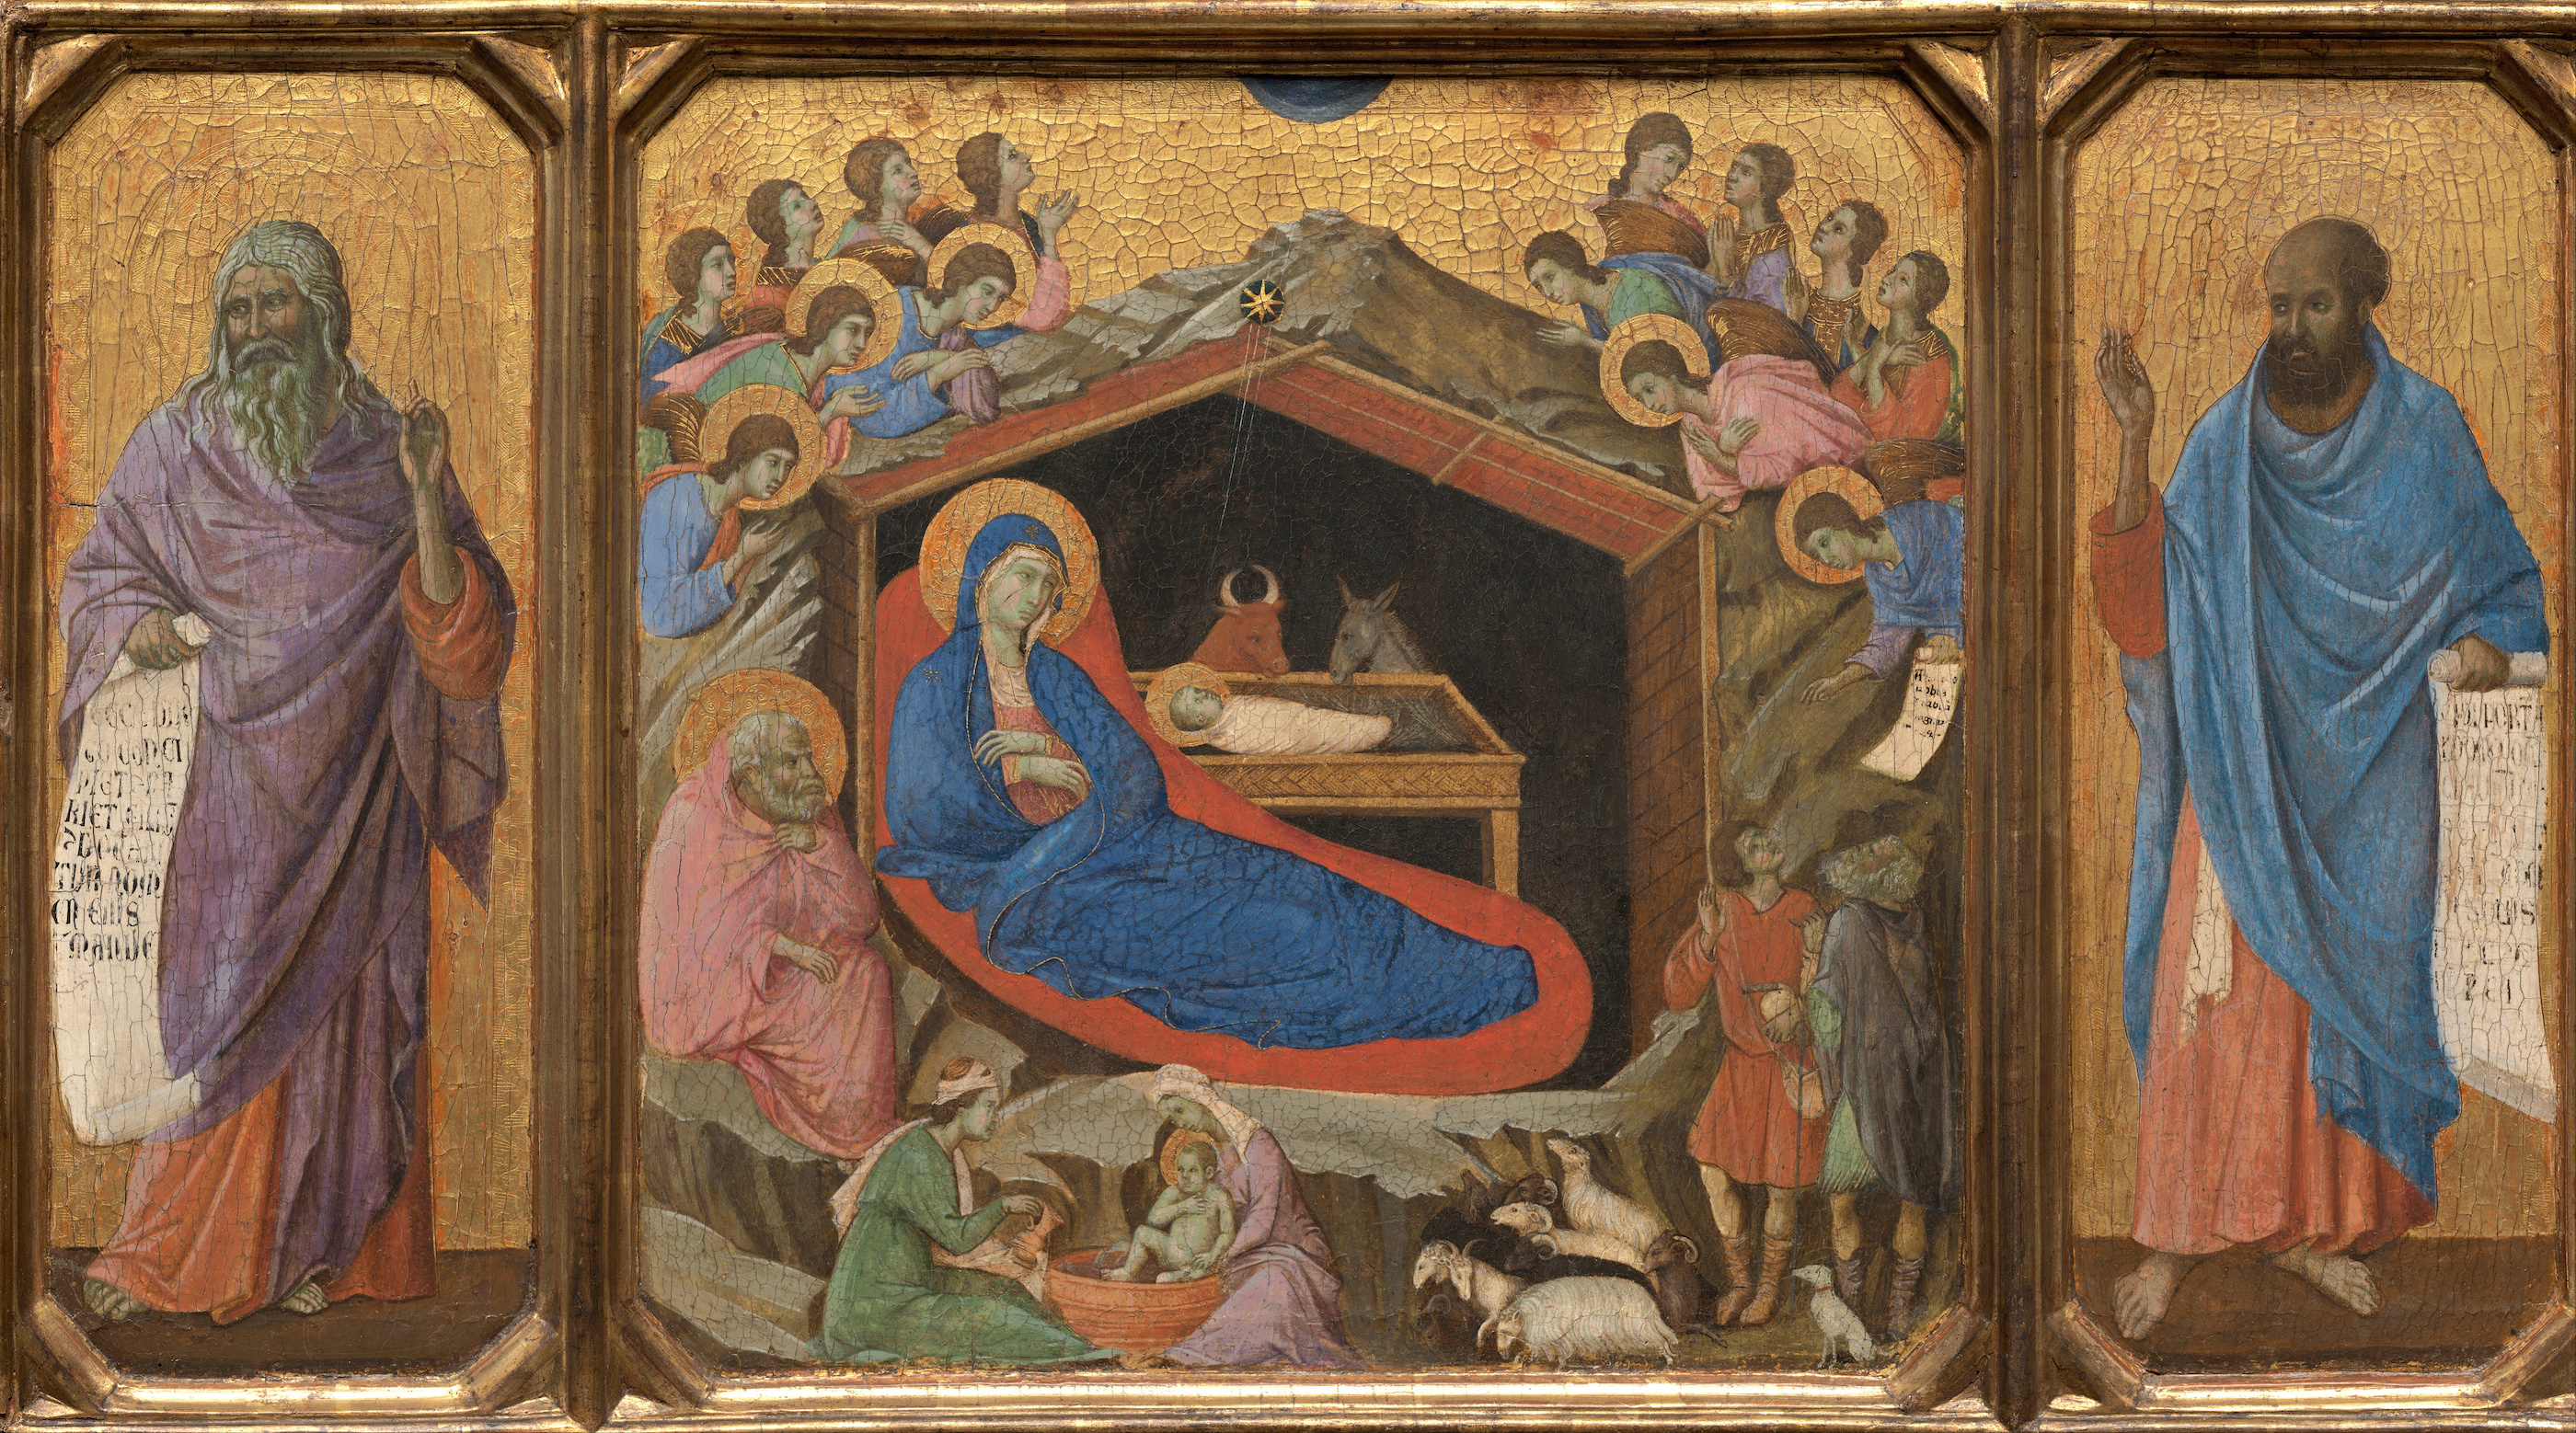 Nativité by Duccio di Buoninsegna - 1308 - 1311 